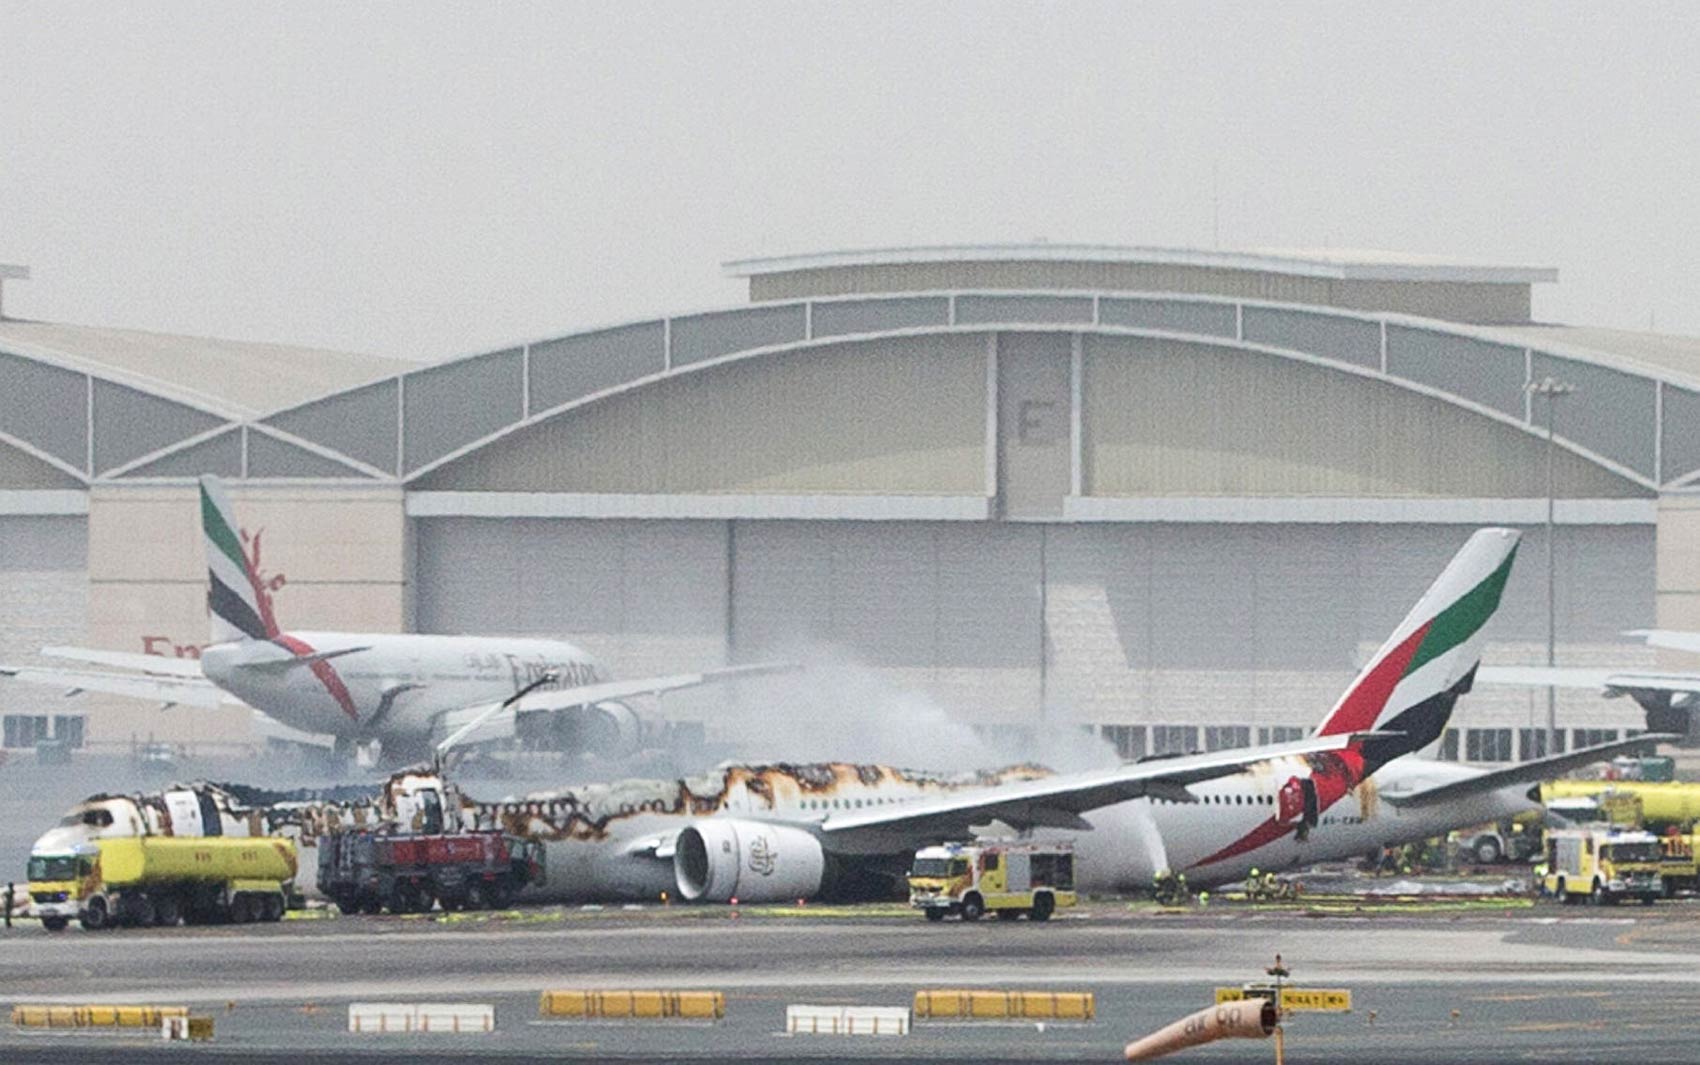 Bombeiros combatem o fogo após um avião da Emirates Airlines fazer um pouso forçado no aeroporto de Dubai, nos Emirados Árabes Unidos (Foto: Reuters/Stringer)